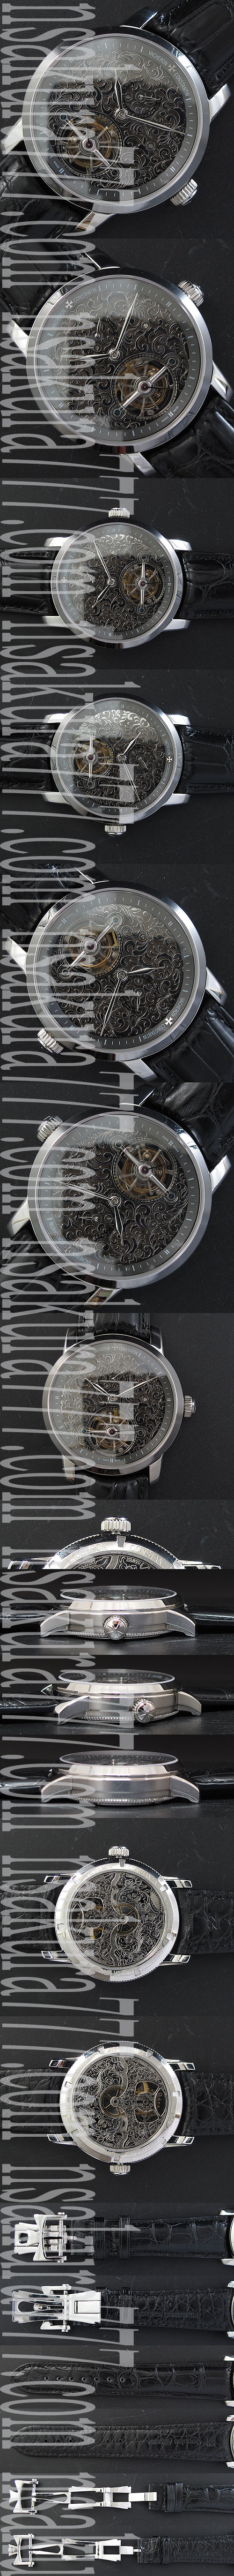 ヴァシュロンコンスタンタン腕時計の説明